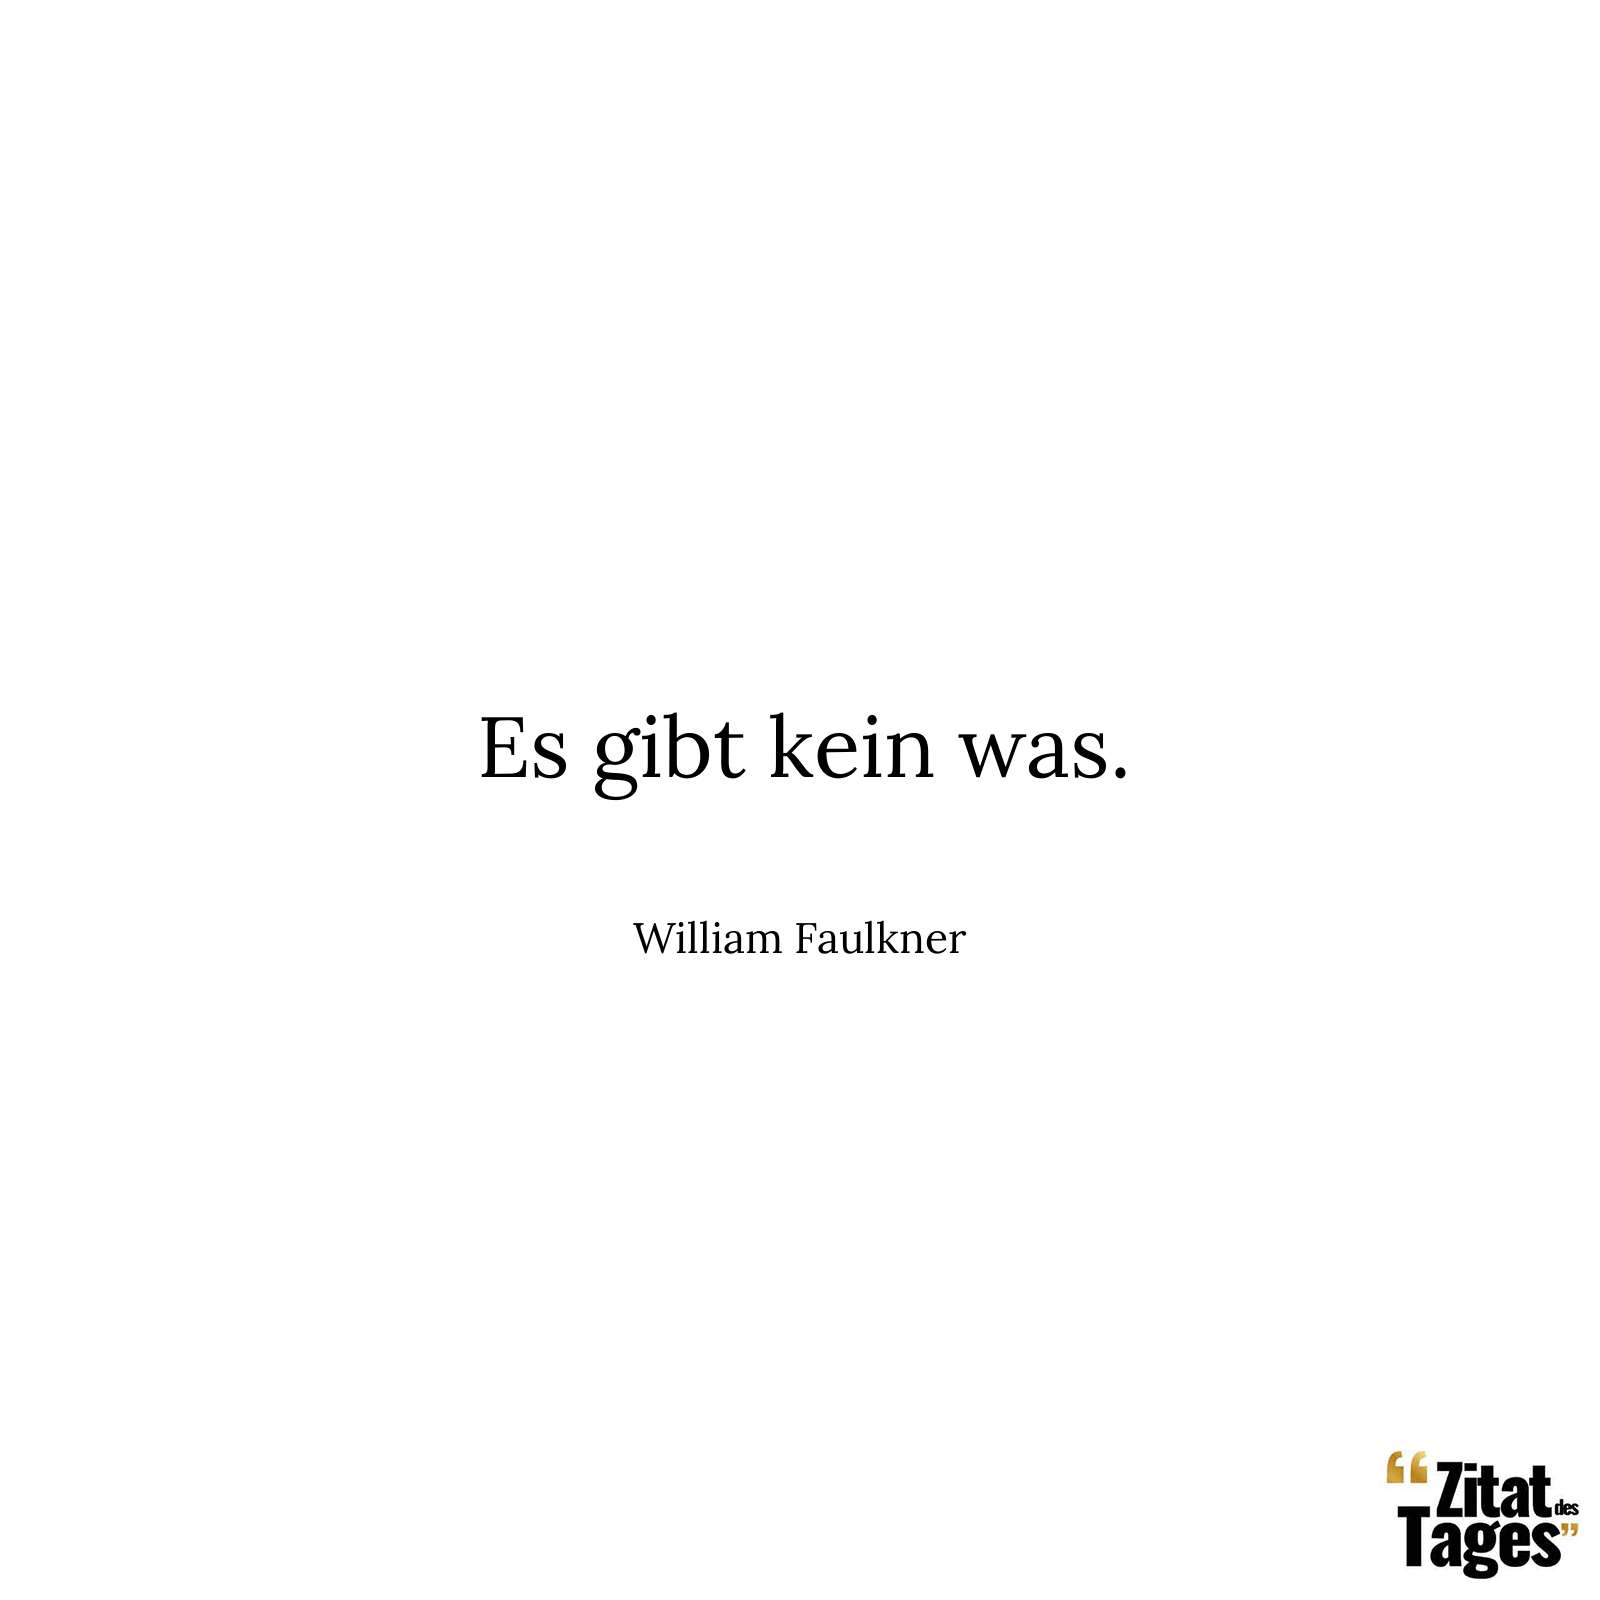 Es gibt kein was. - William Faulkner